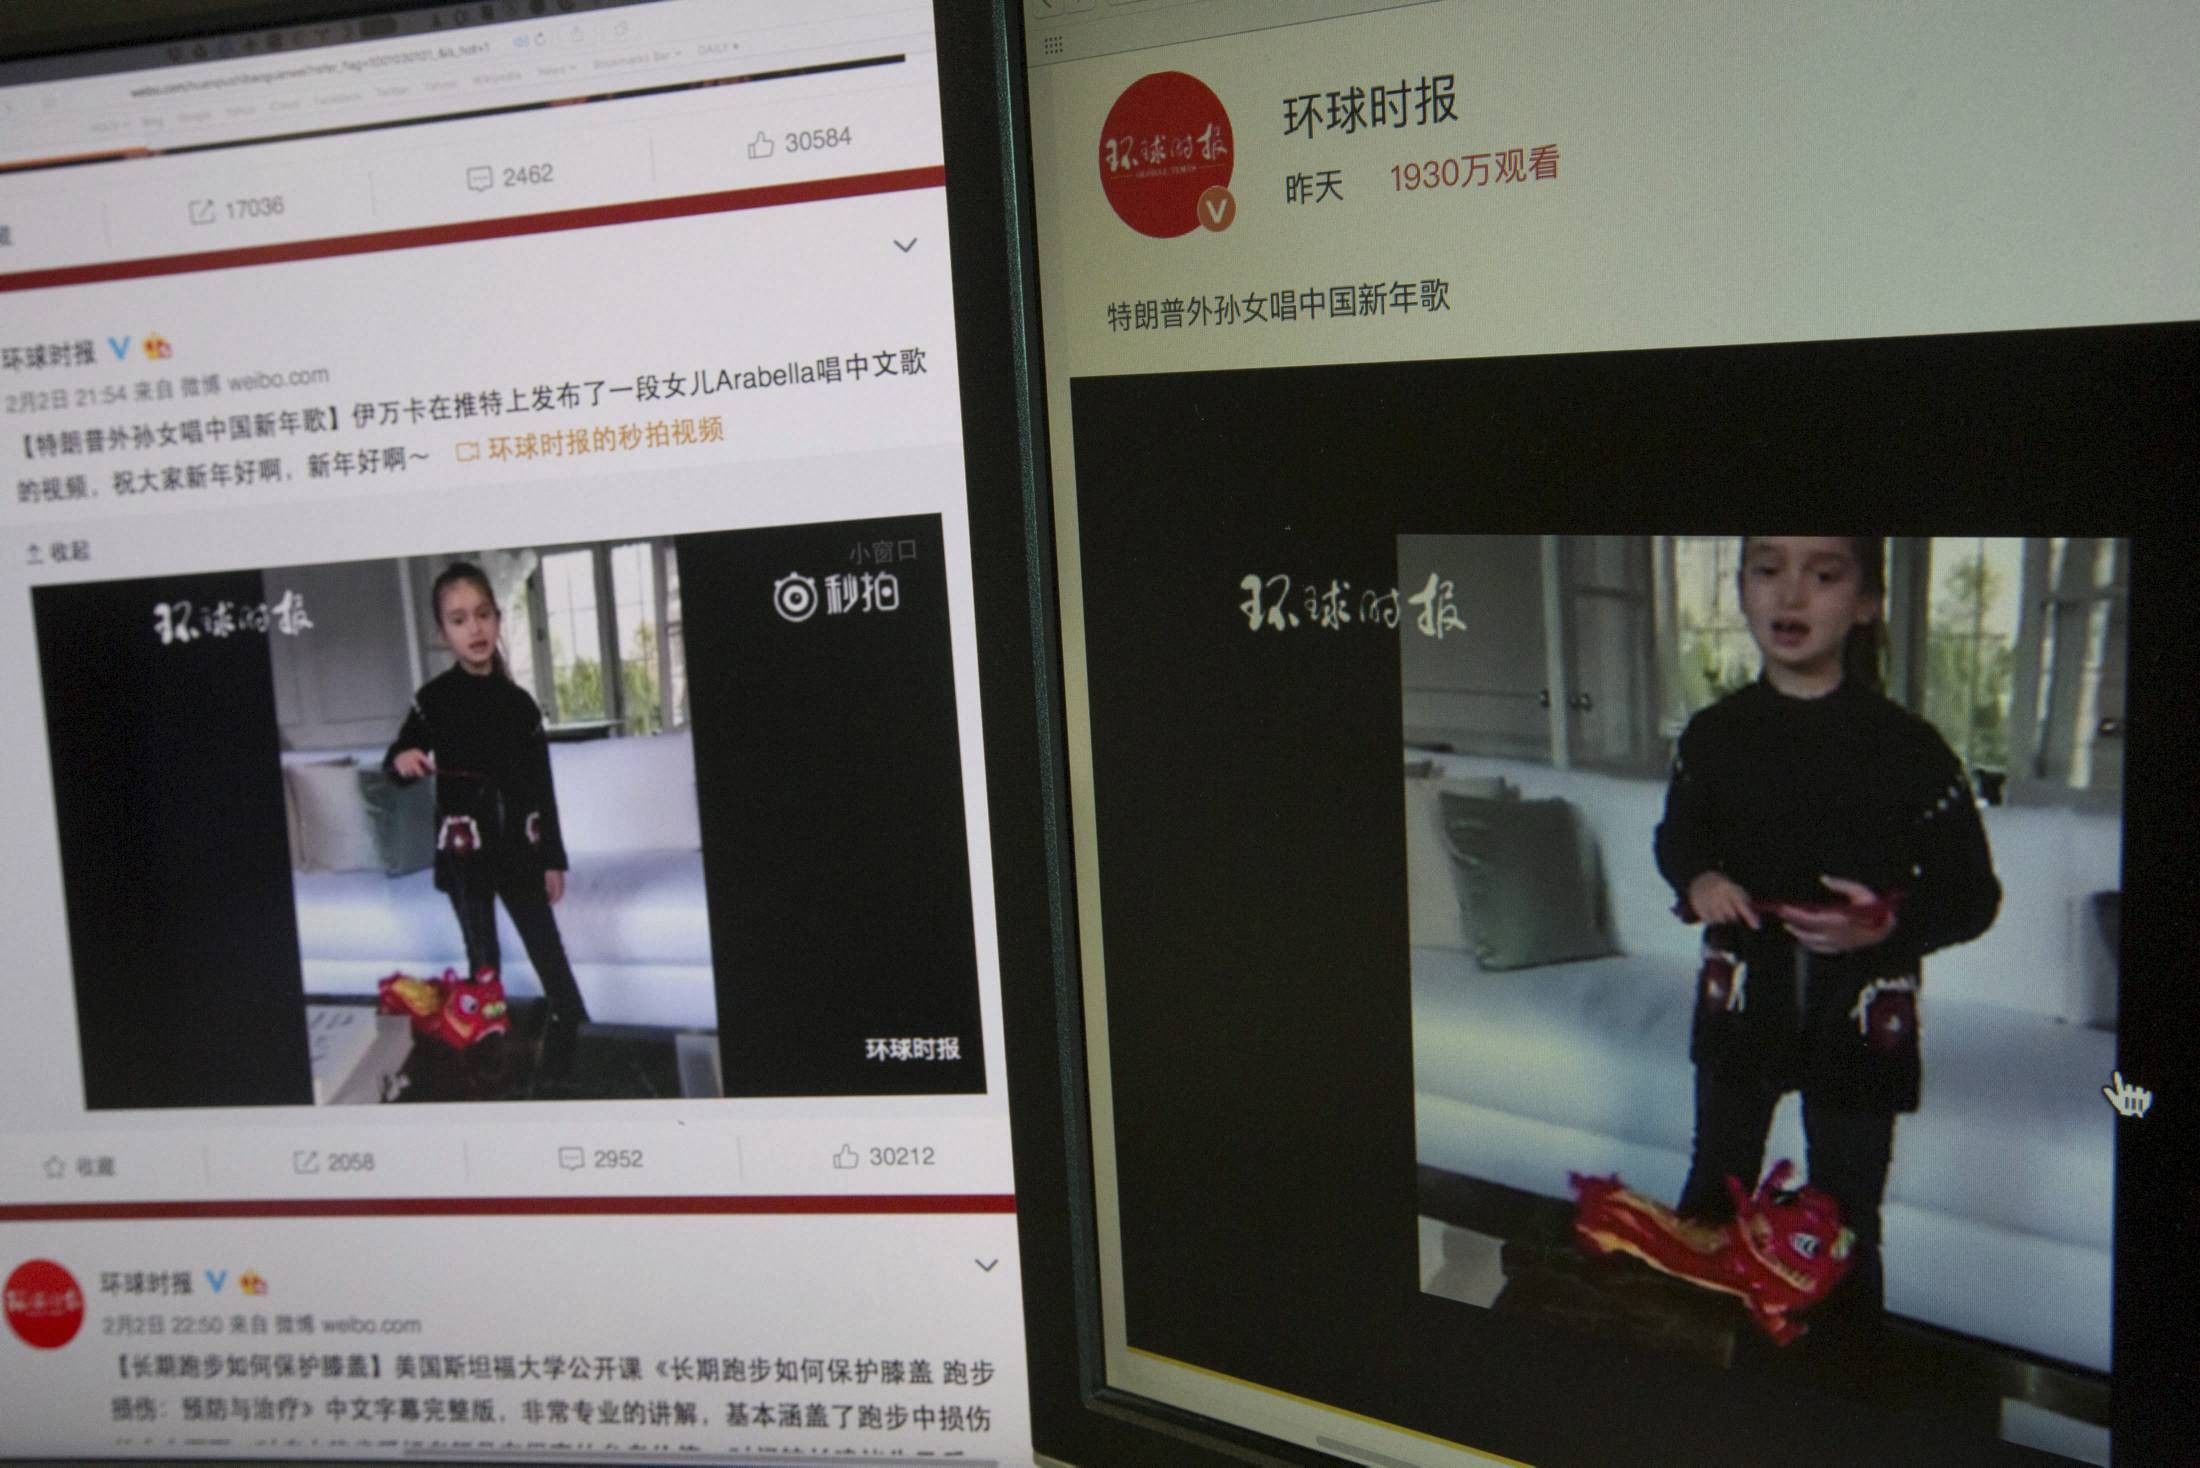 चीनी वेबसाइटों पर धूम मचा रहा है गीत गाती ट्रंप की नातिन का वीडियो   